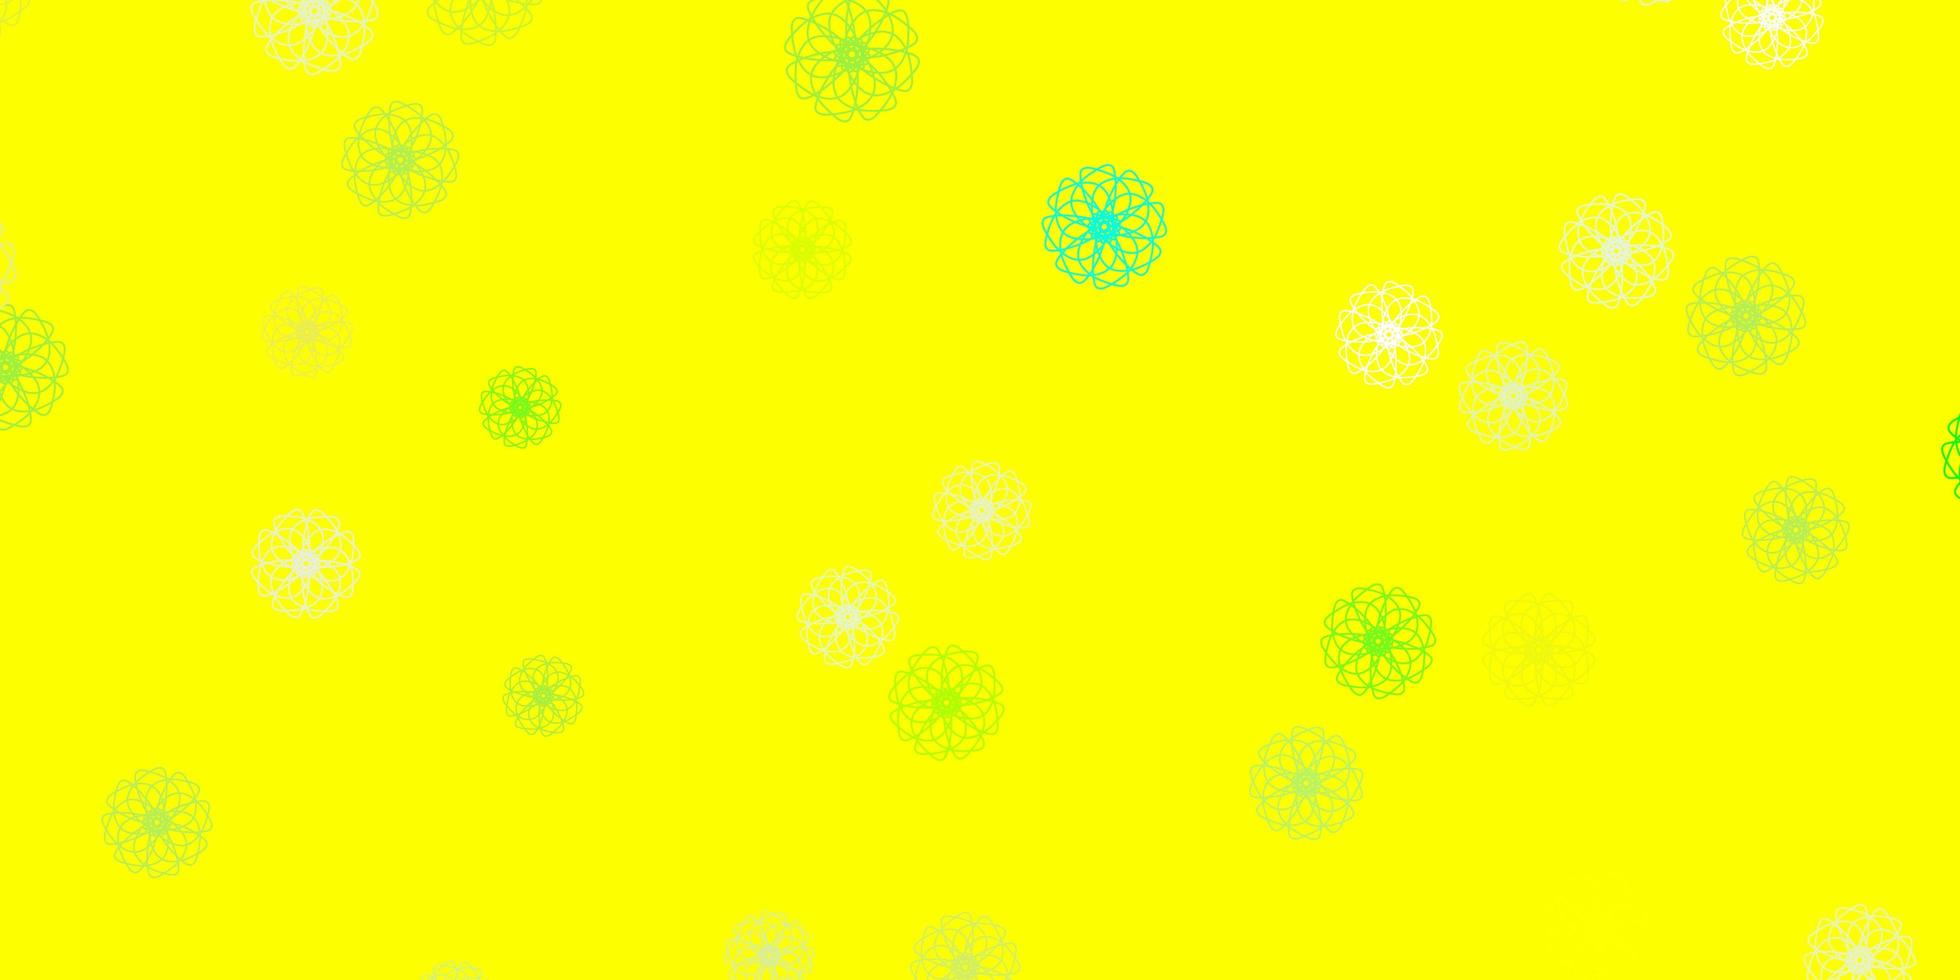 motif de doodle vecteur vert clair, jaune avec des fleurs.